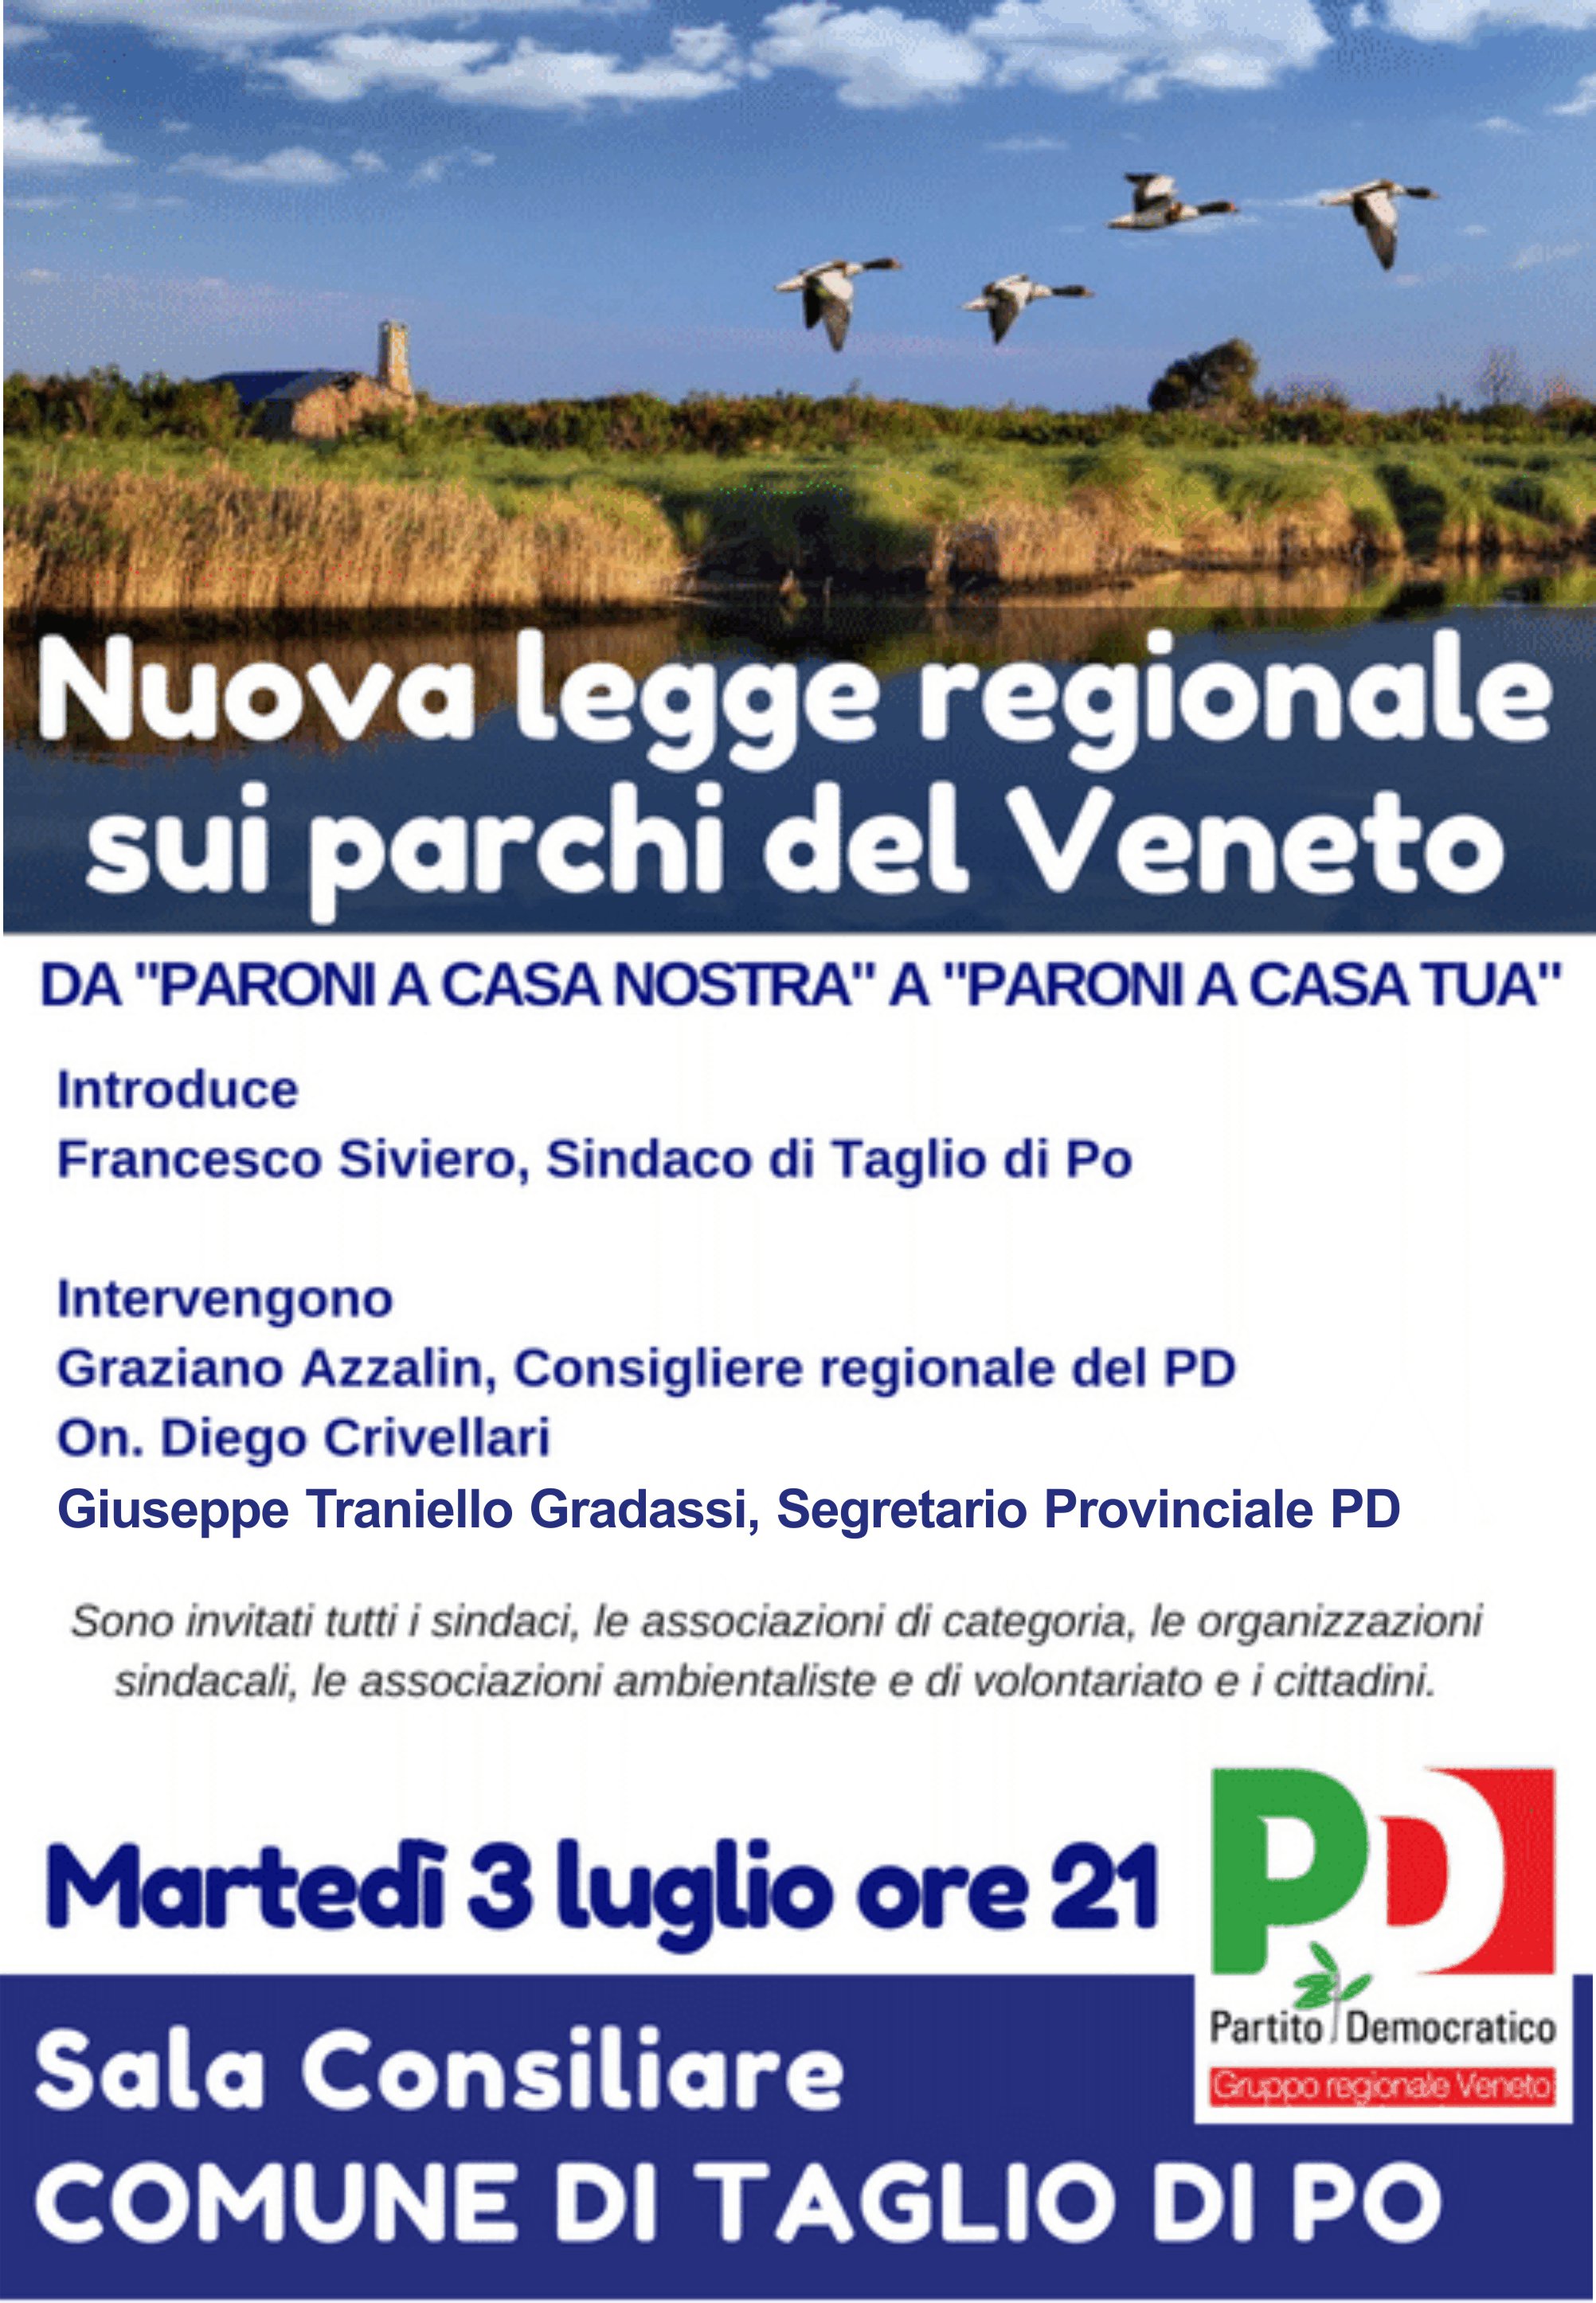 Al momento stai visualizzando Nuova legge regionale sui parchi del Veneto